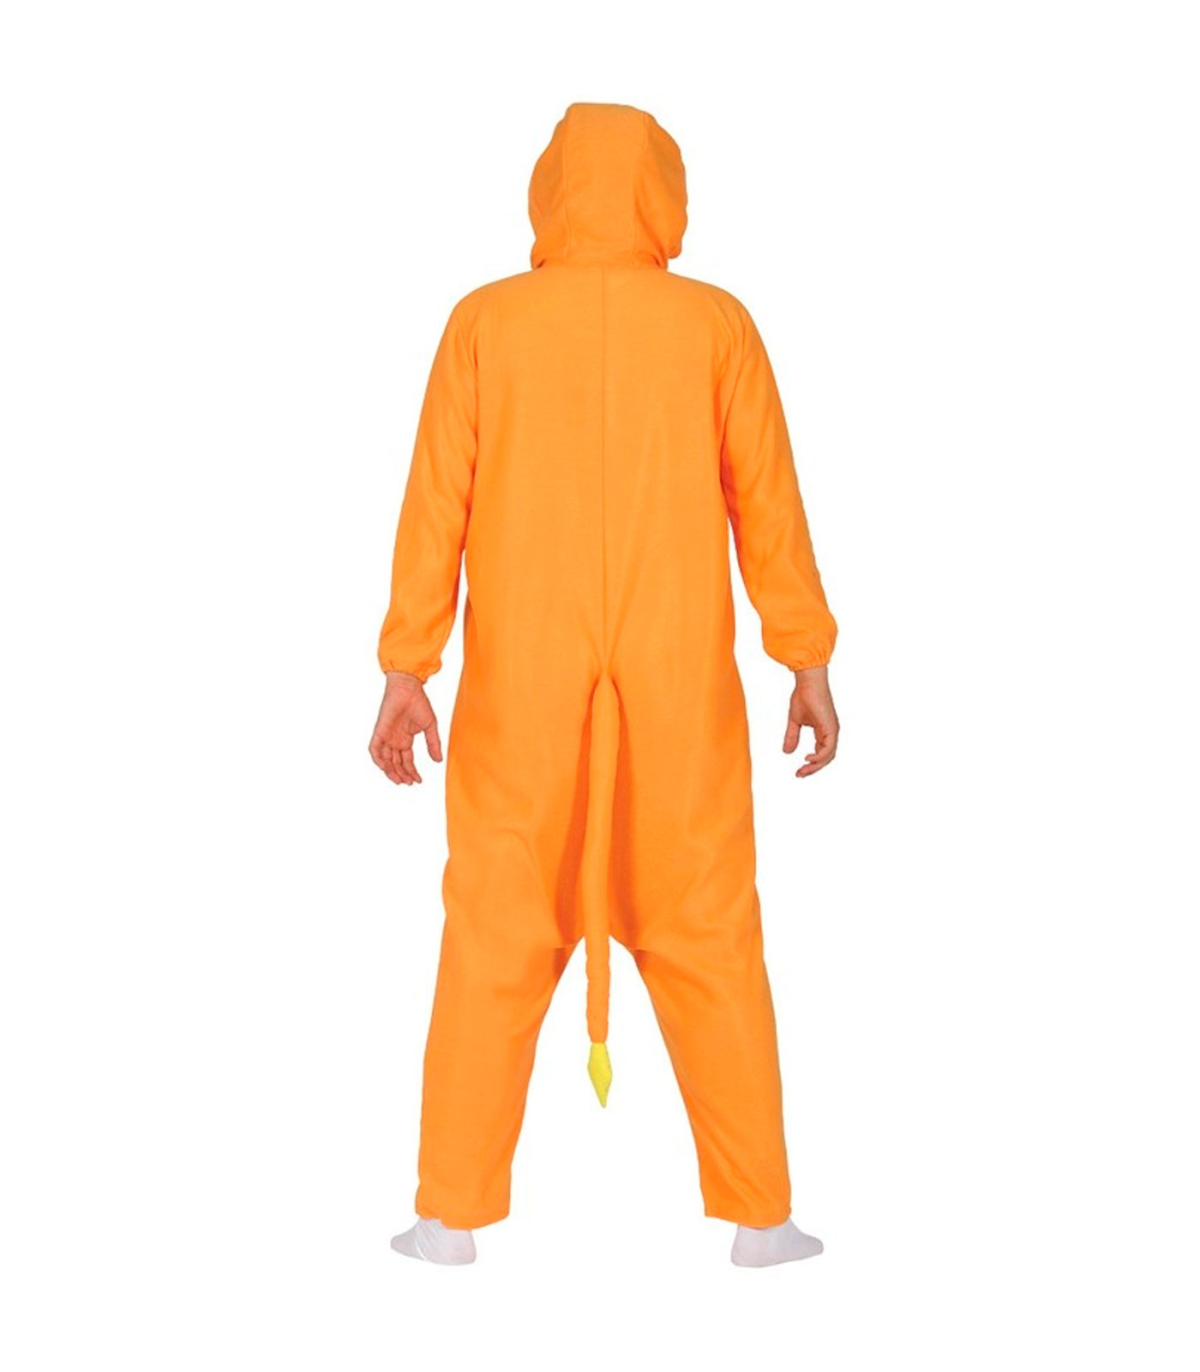 Tradineur - Disfraz de dragón naranja para adulto, fibra sintética, mono con capucha y cola, carnaval, cospla